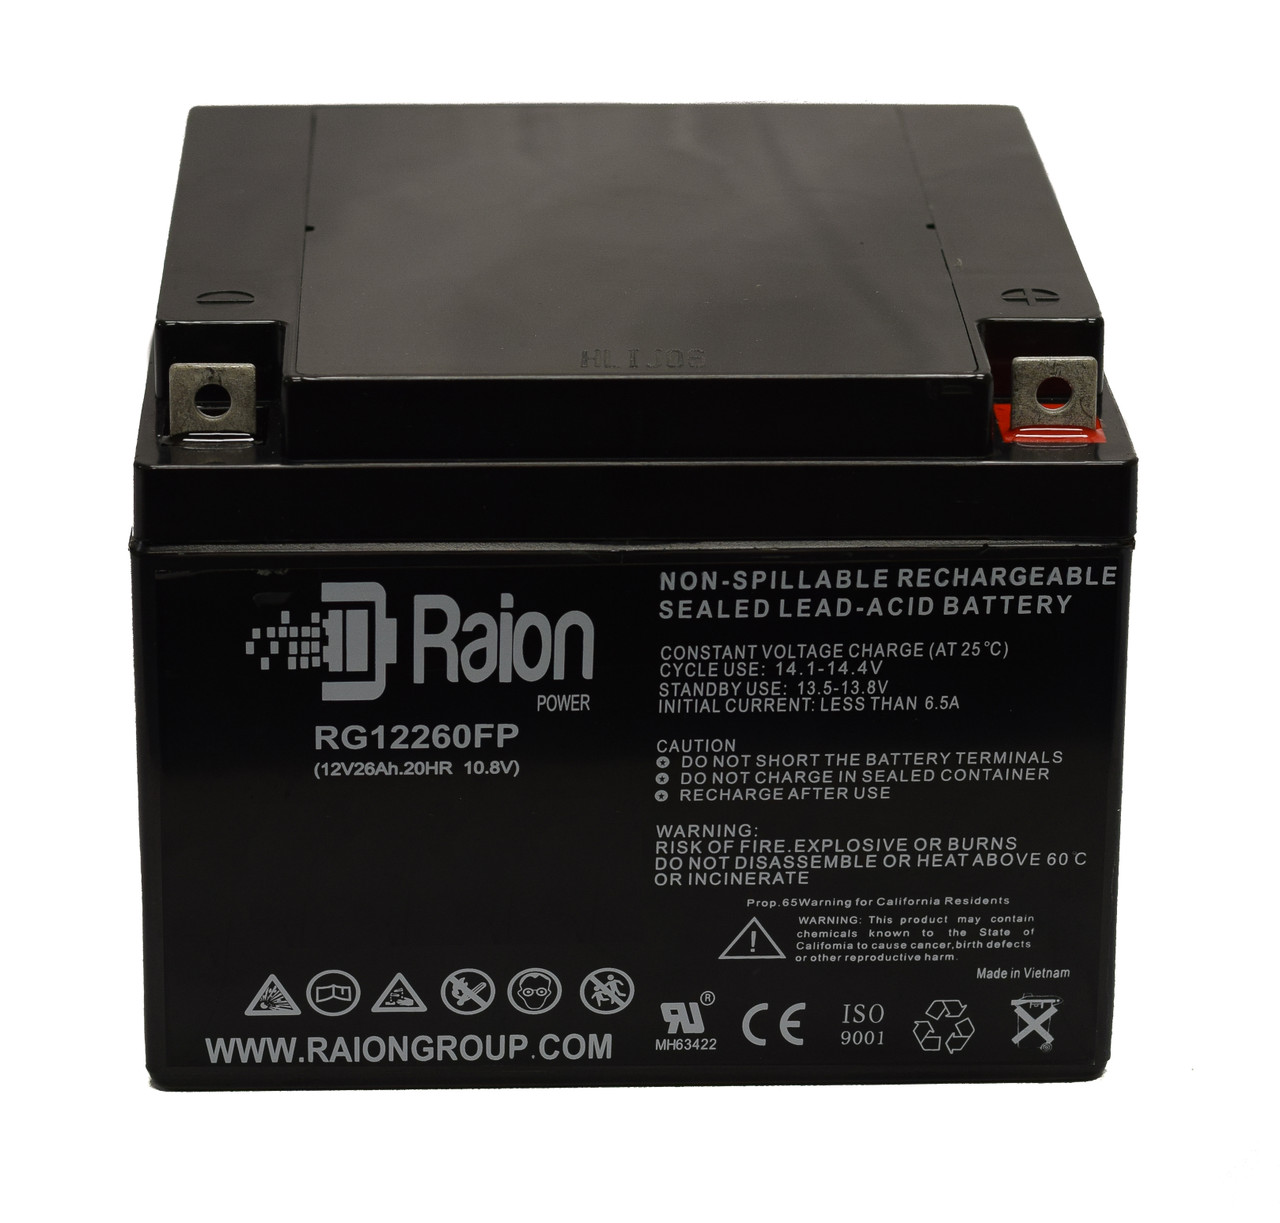 Raion Power RG12260FP 12V 26Ah Lead Acid Battery for Amsco Surgical Table 3080 RL Control